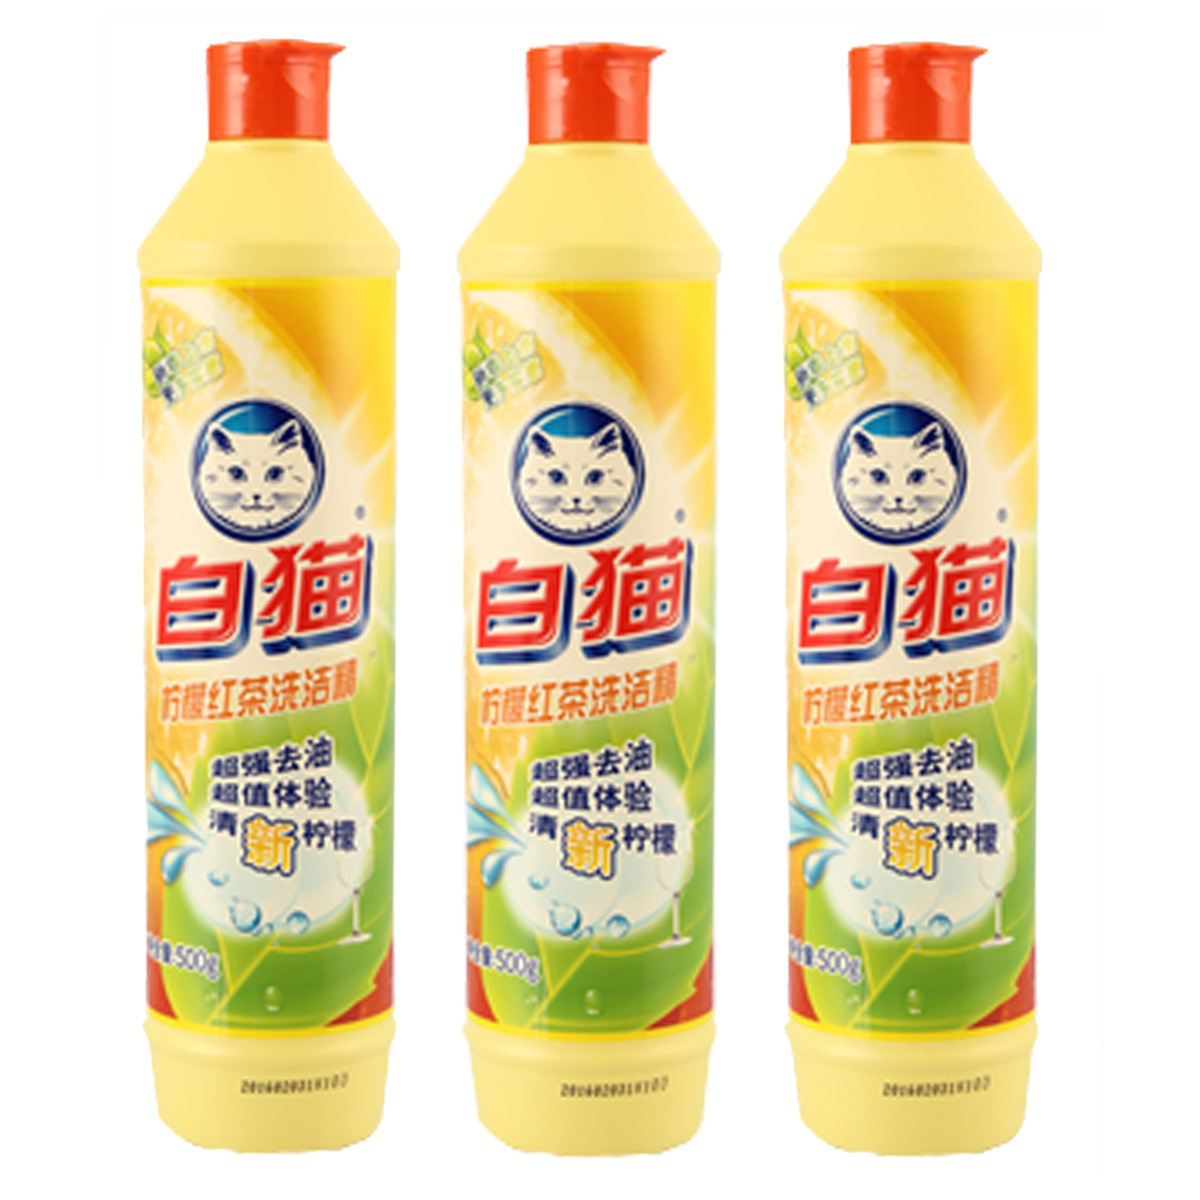 正品批发 白猫500g柠檬红茶洗洁精 30瓶每箱 厂家供应 商超 福利